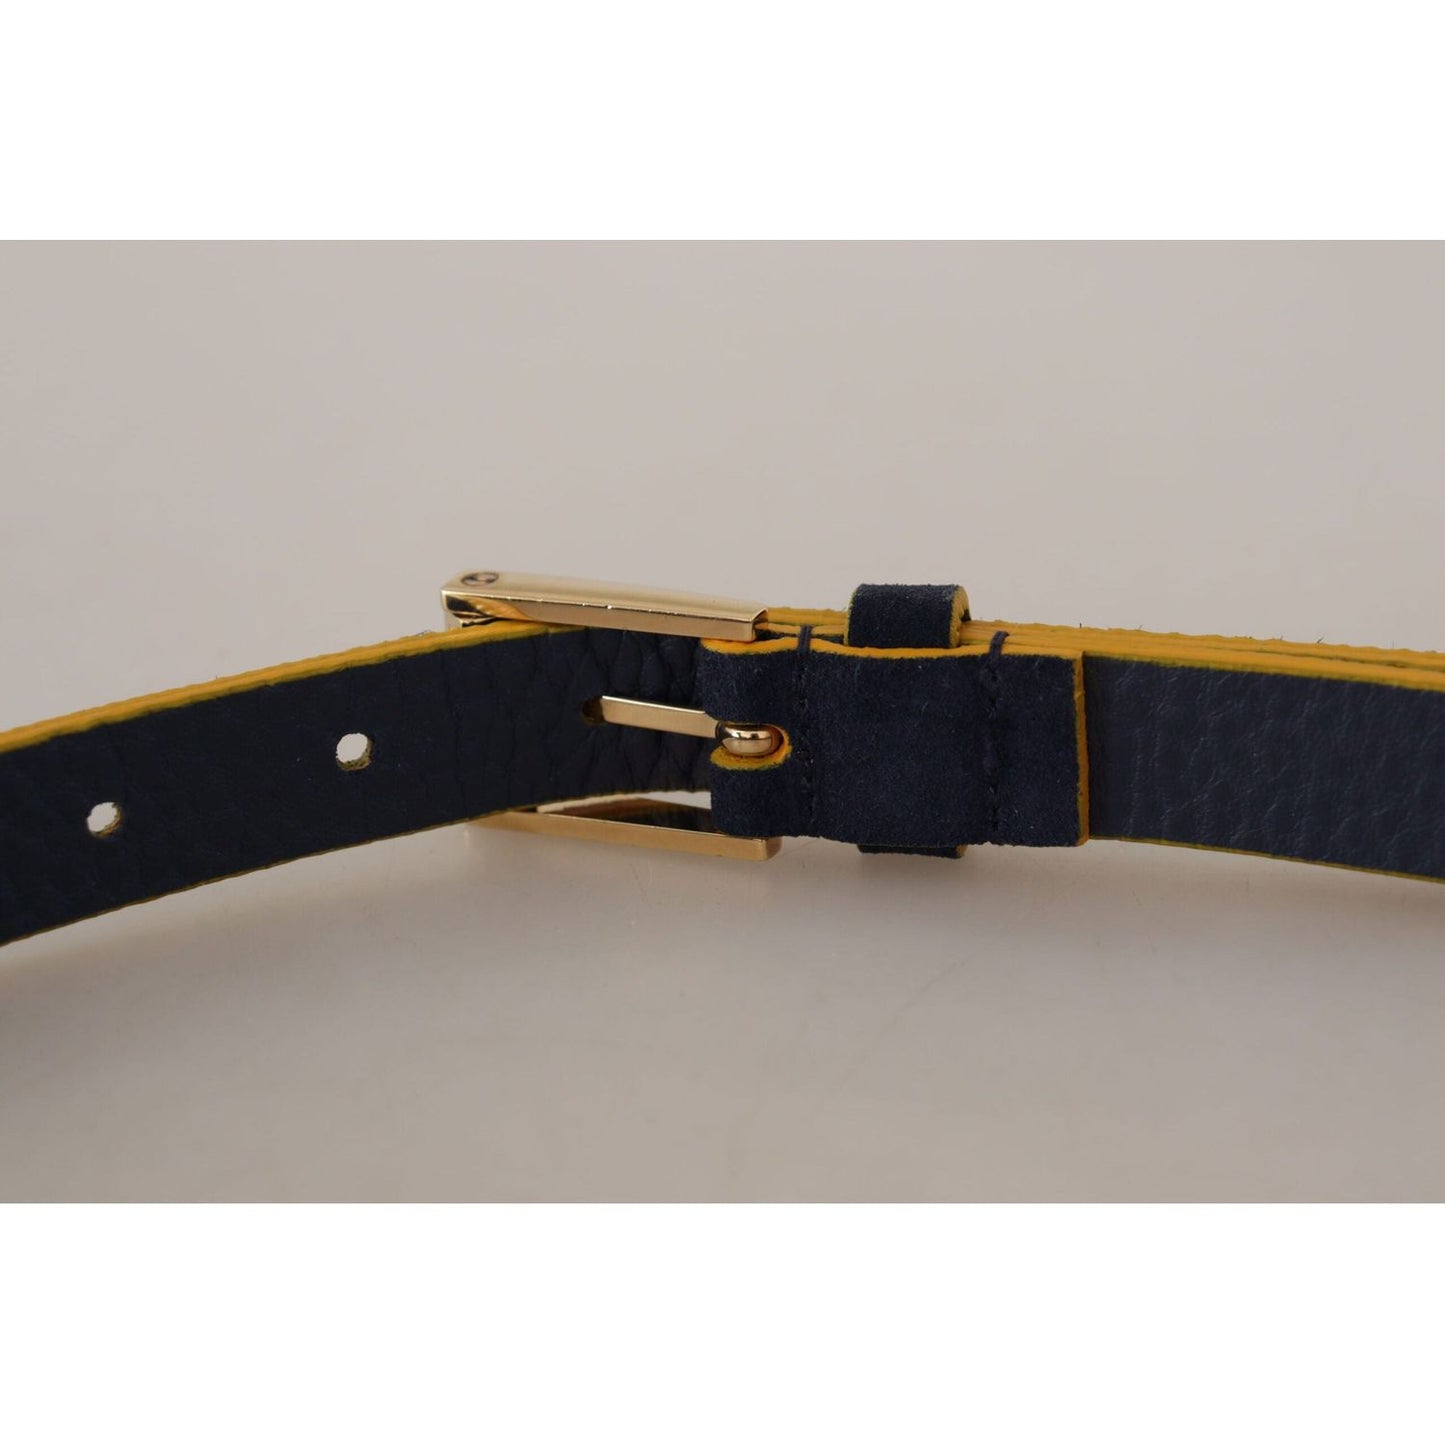 Dolce & Gabbana Chic Blue Suede Logo Buckle Belt blue-suede-yellow-gold-metal-logo-buckle-belt